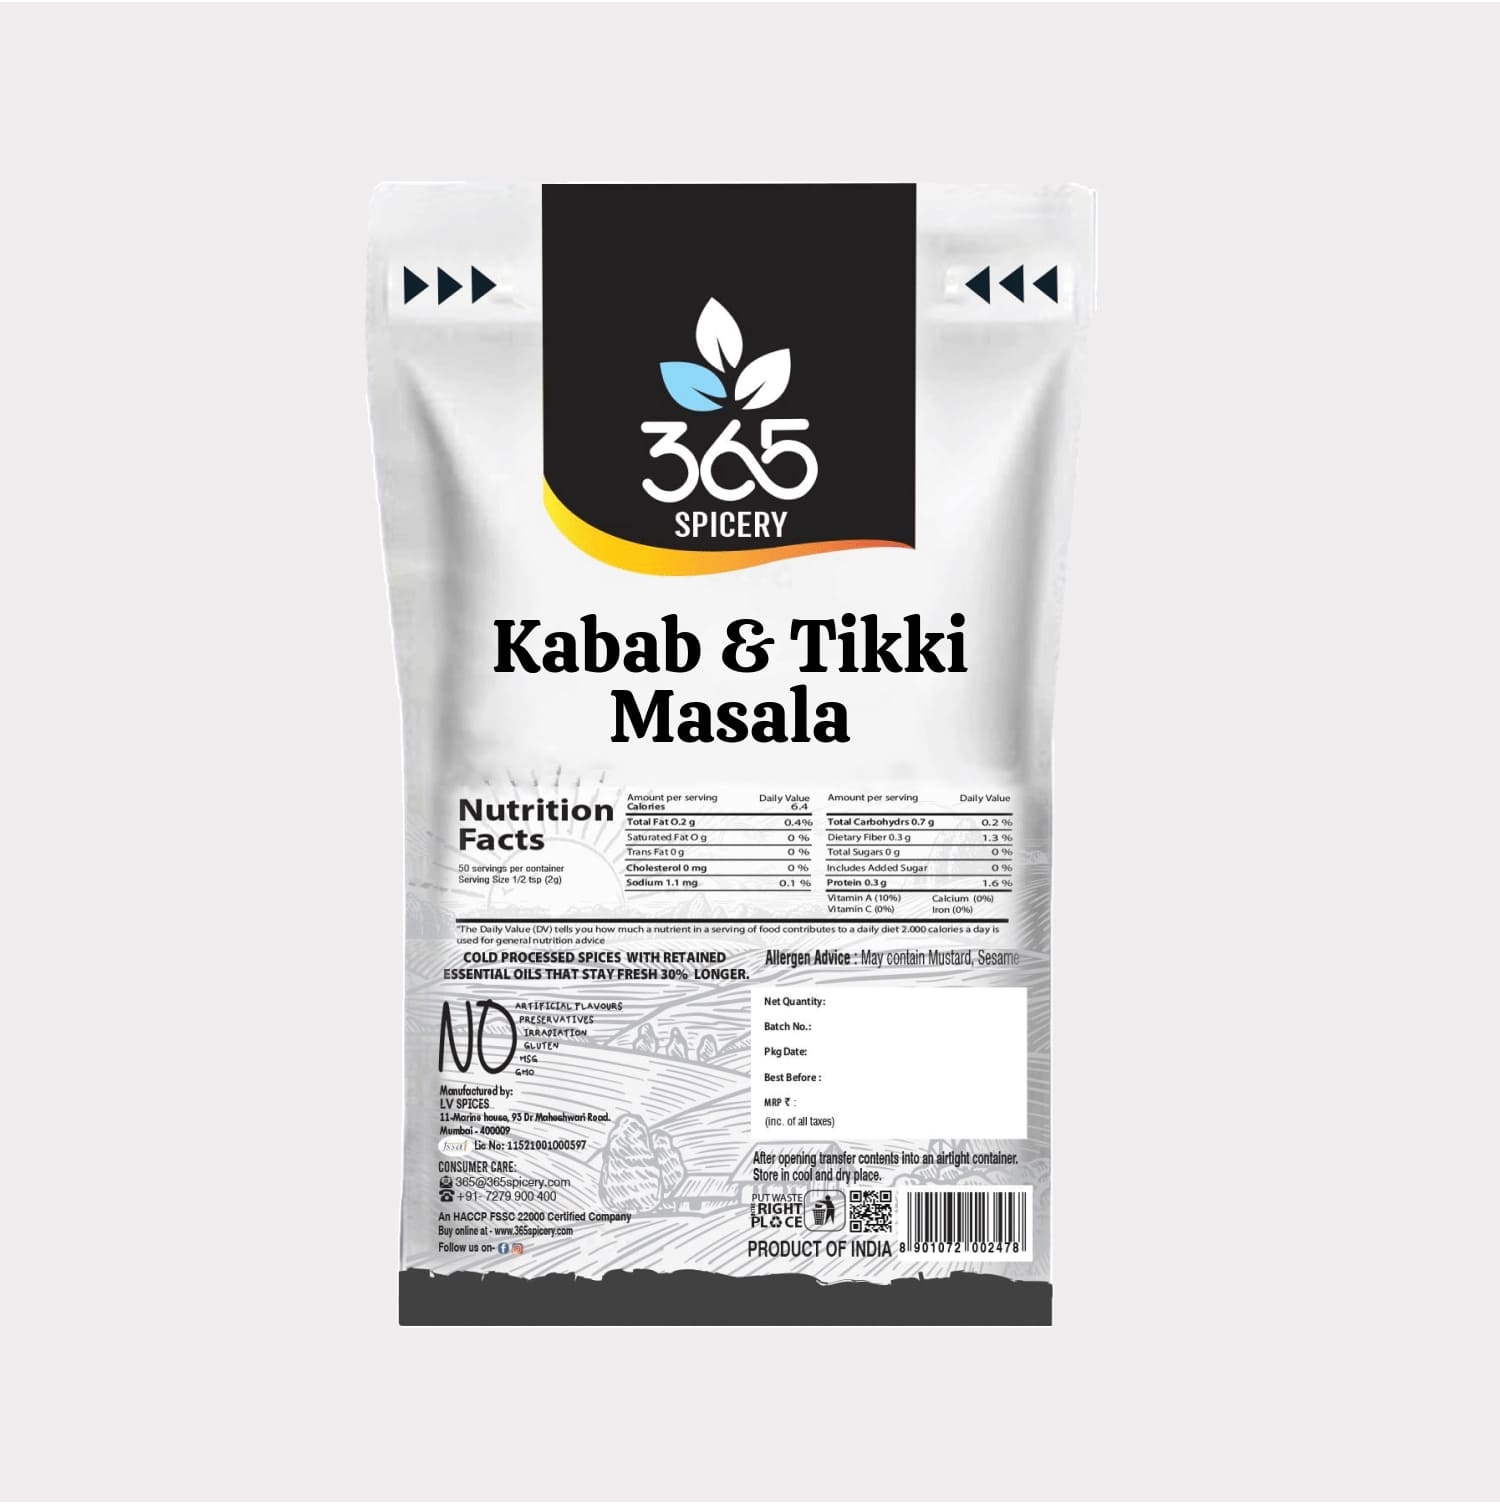 Kabab & Tikki Masala